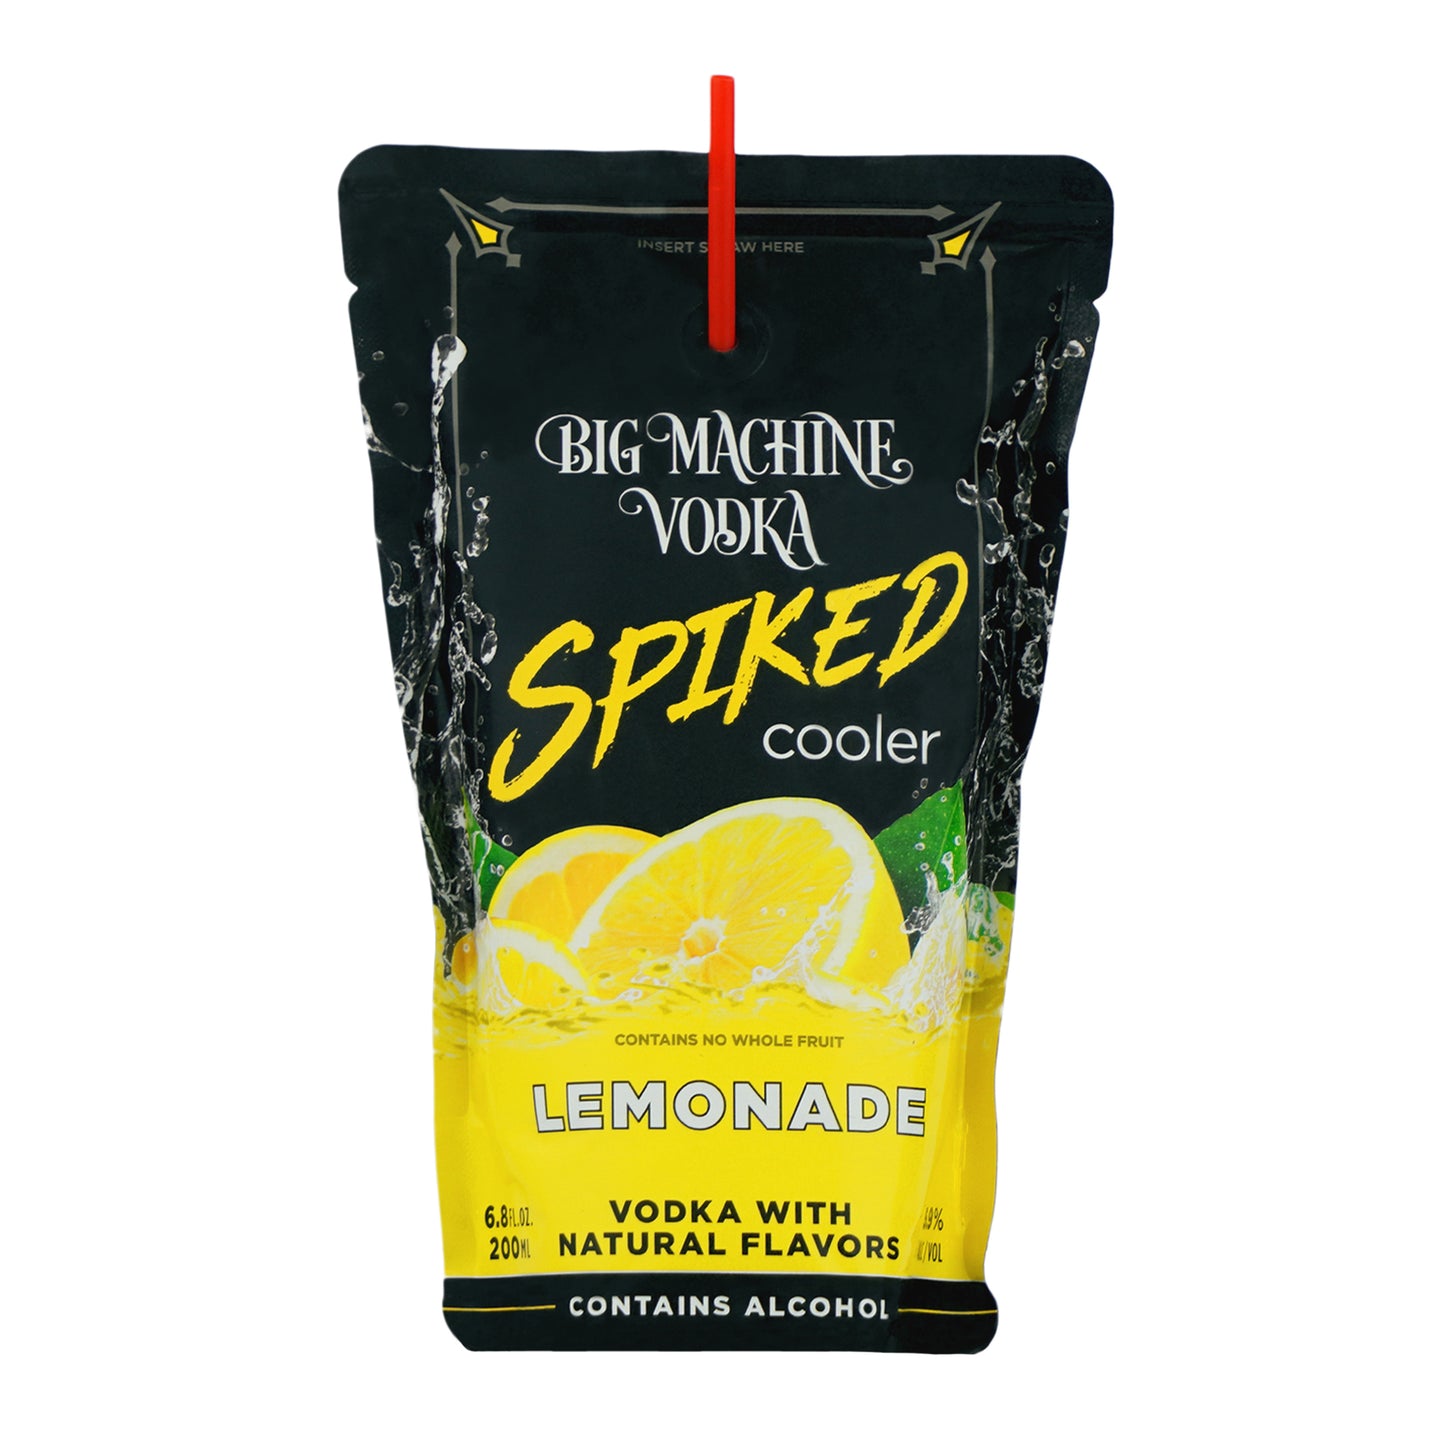 Big Machine Vodka Spiked Cooler Lemonade - 24 Pack